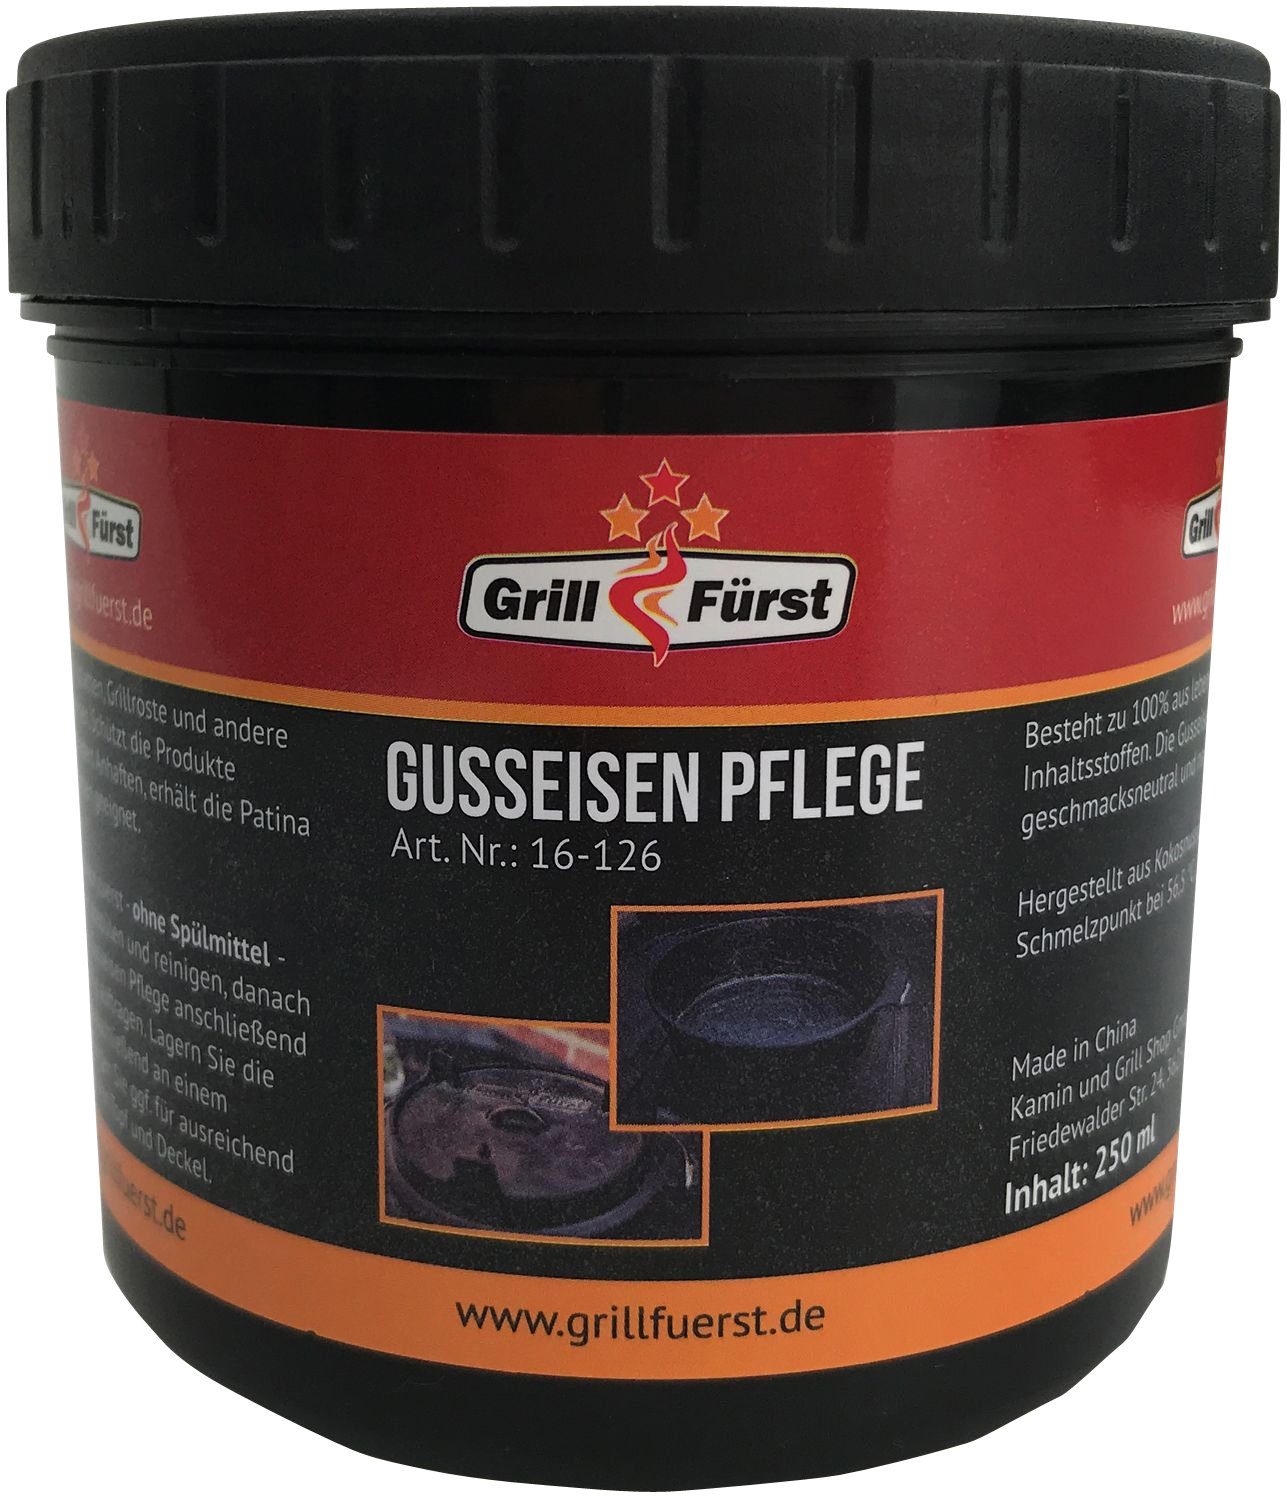 inkl. Gusseisen Dutch Tragetasche, X-DEAL Grillfürst Oven Edition DO2 Bratentopf Pflege - Deckelheber und BBQ Grillfürst